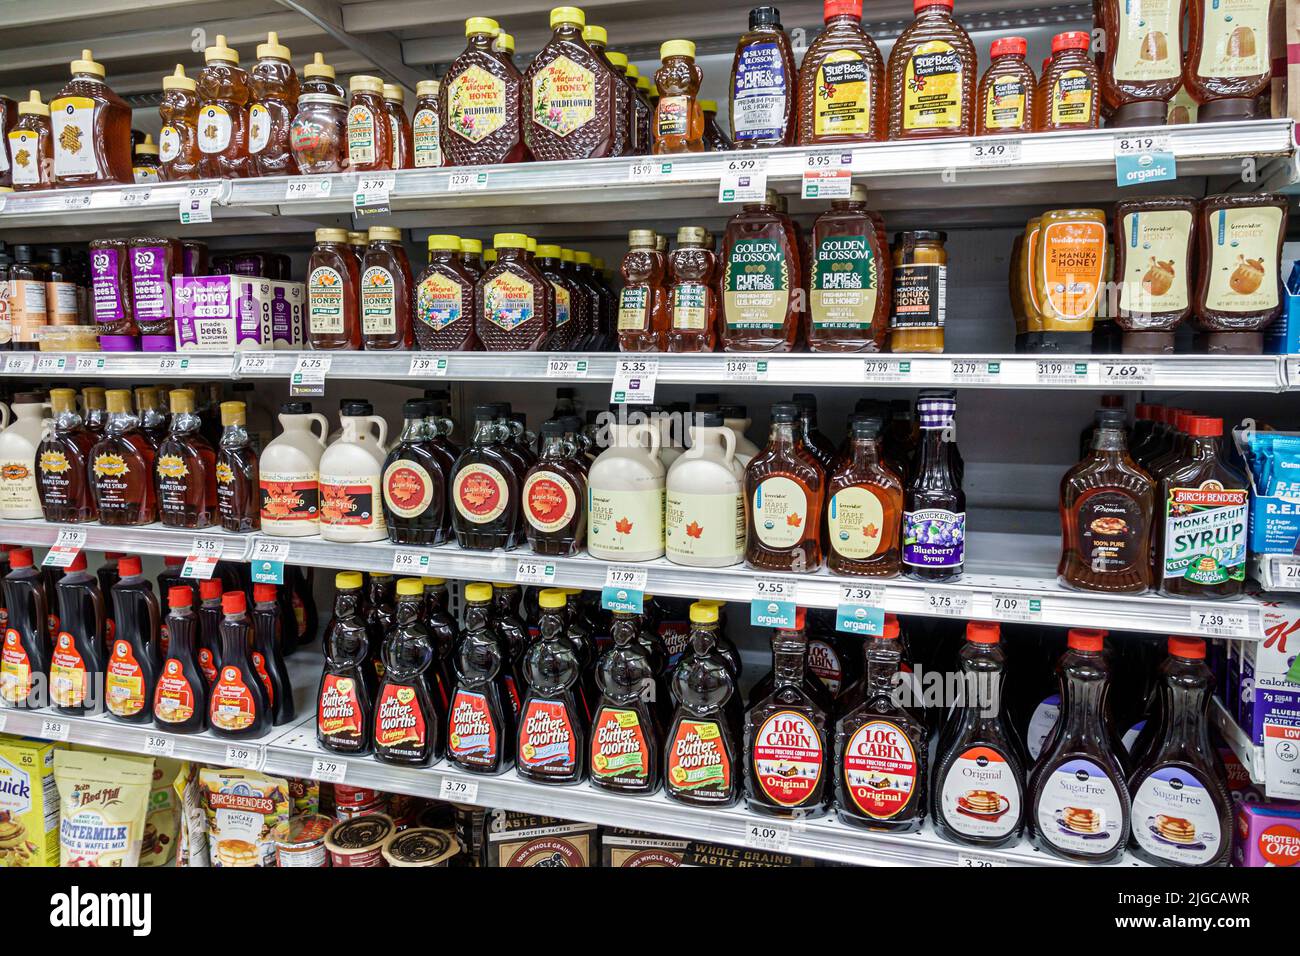 Miami Beach Florida, Publix tienda de comestibles supermercado comestibles comida interior, mostrar estantes de venta estantes botellas de jarabe de arce Foto de stock